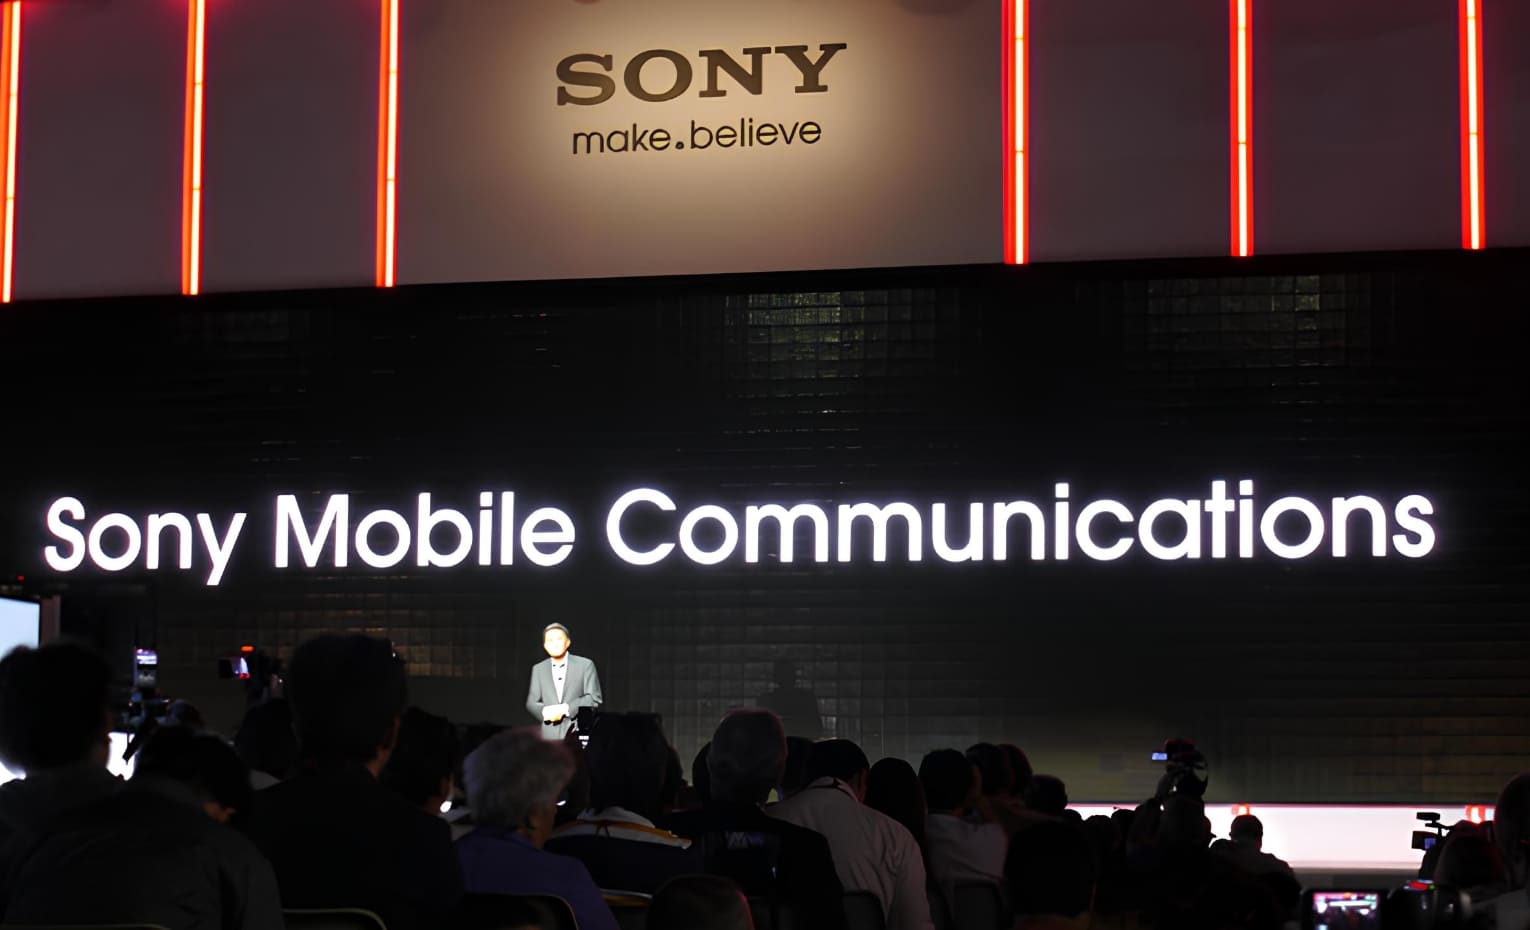 تاریخچه برند Sony | شرکت Sony Mobile Communications